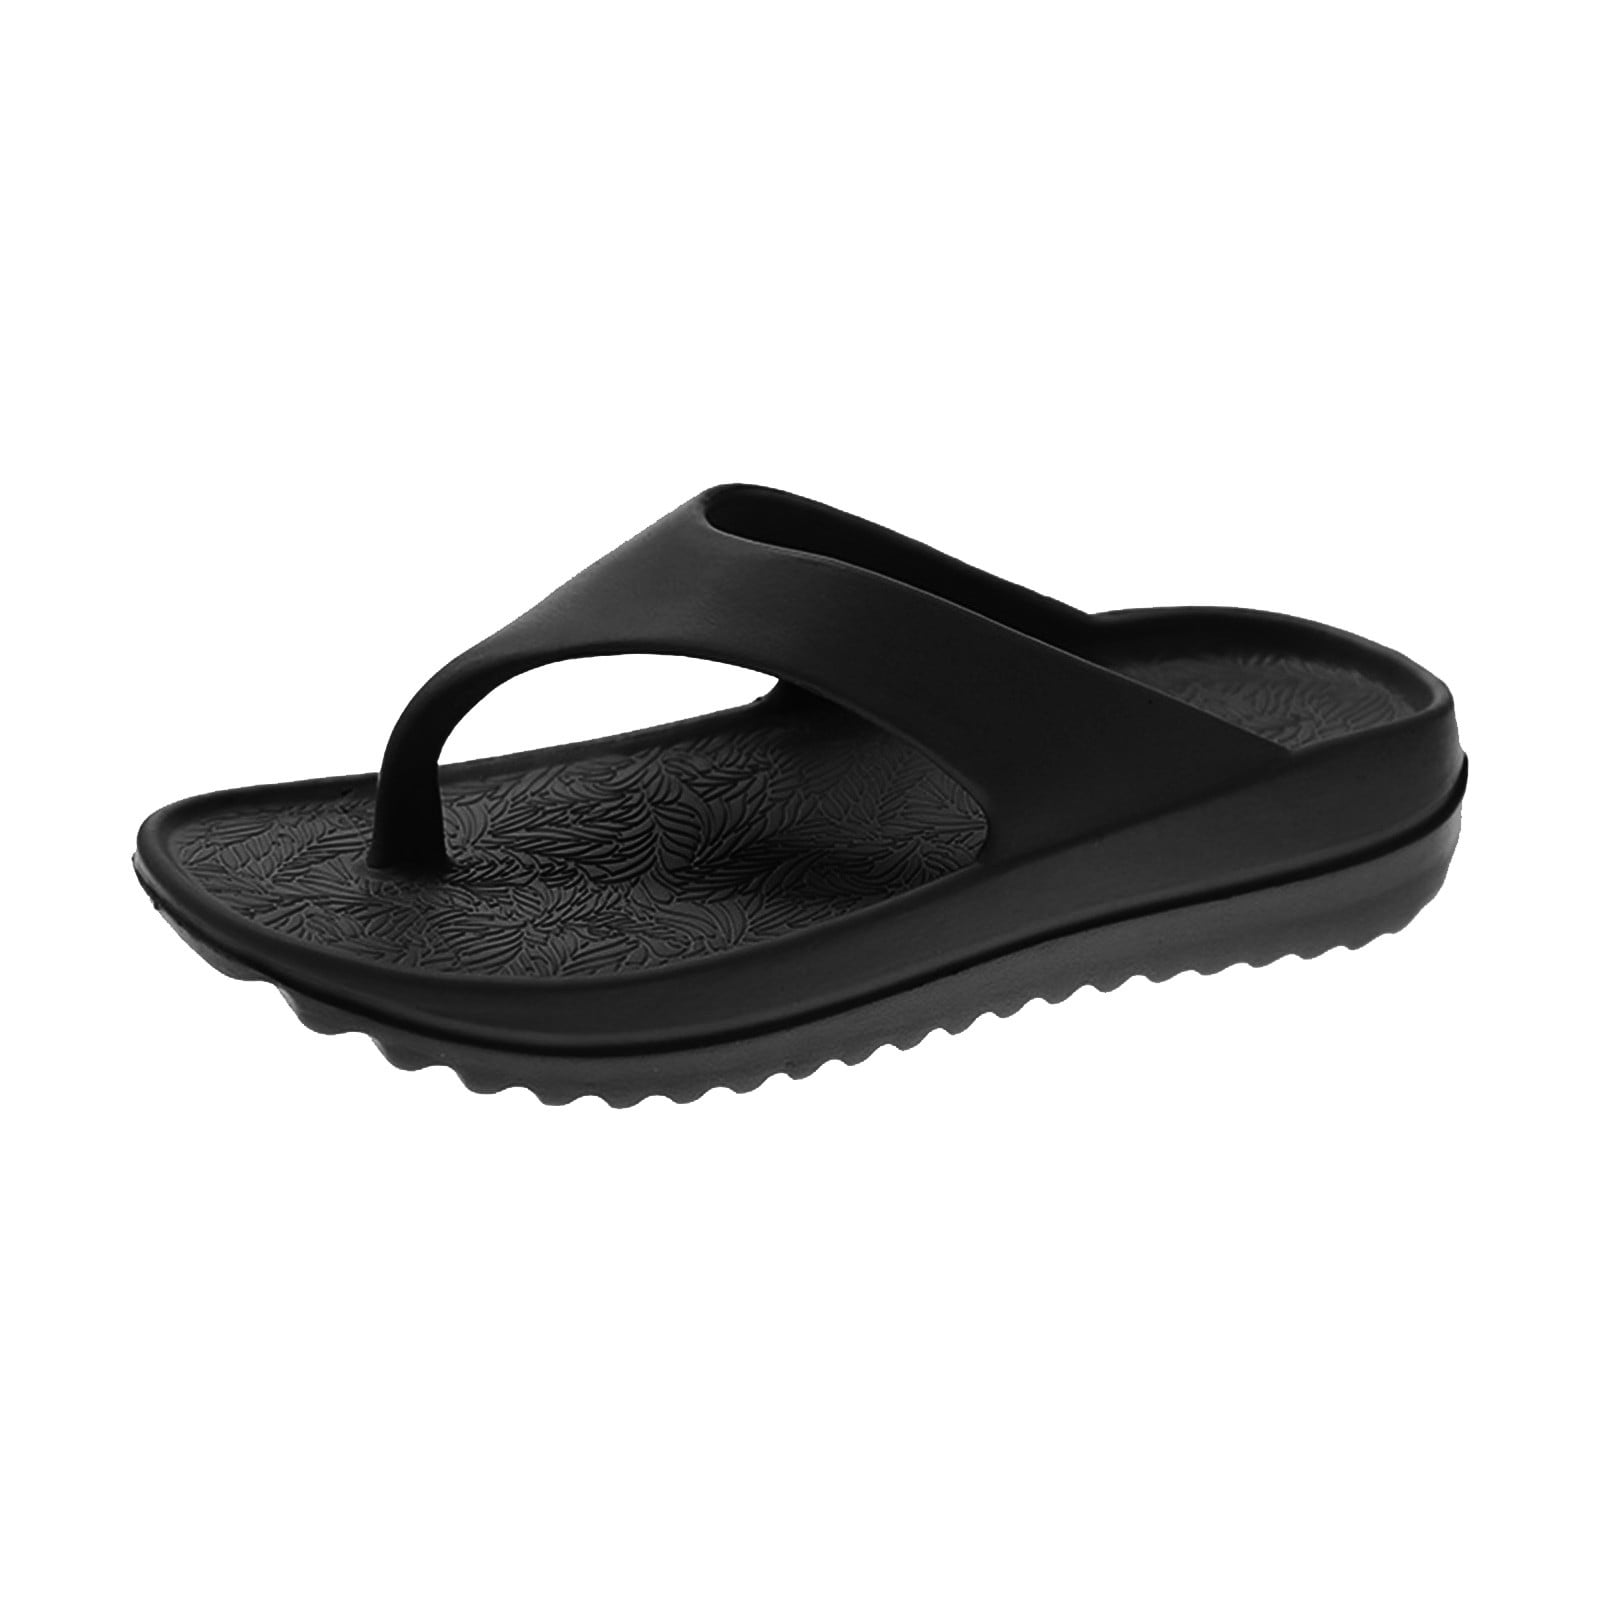 Midsumdr Women&Men's Beach Sandals Lazy Beach Shoes, Quick-Dry Flip ...